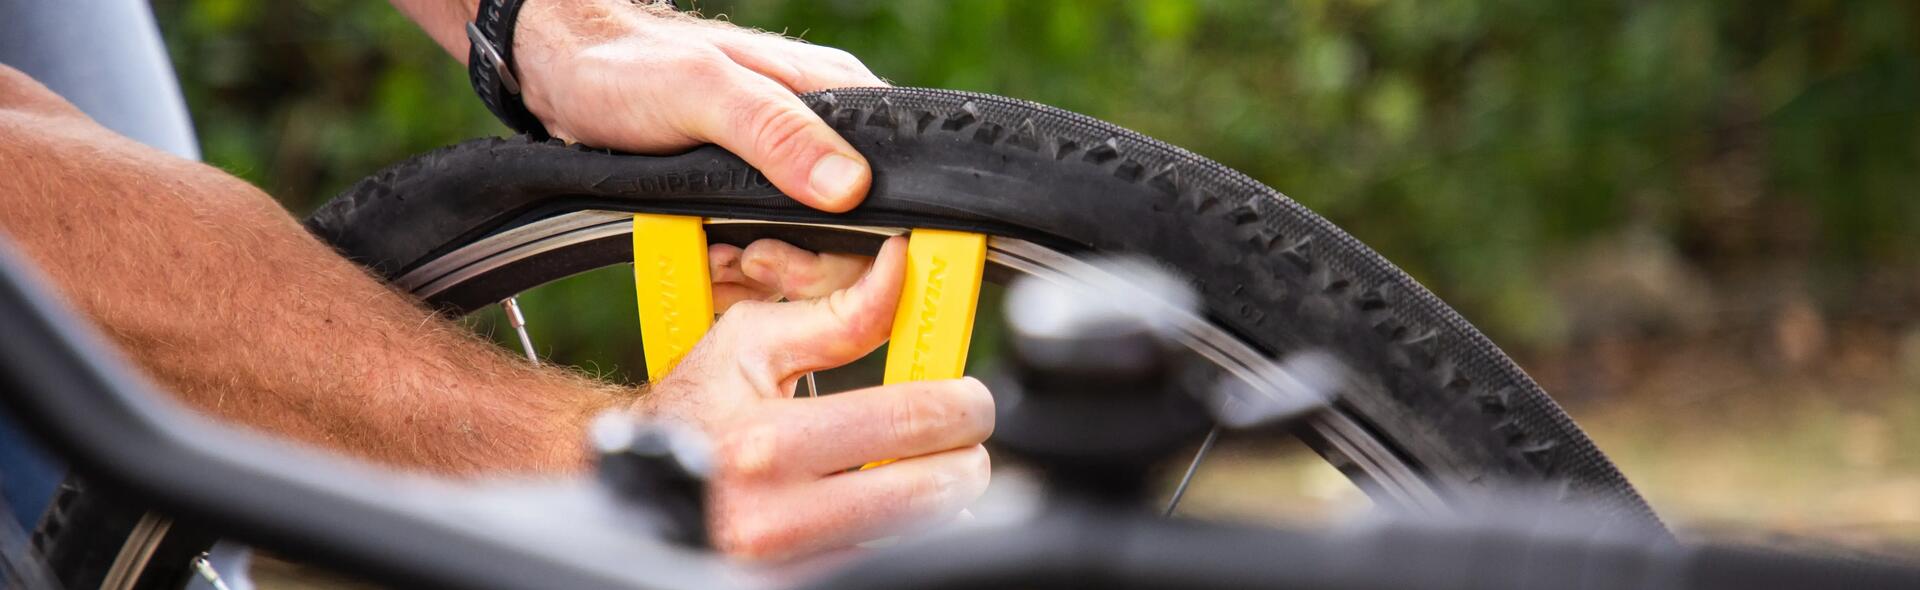 Reparar um pneu de bicicleta